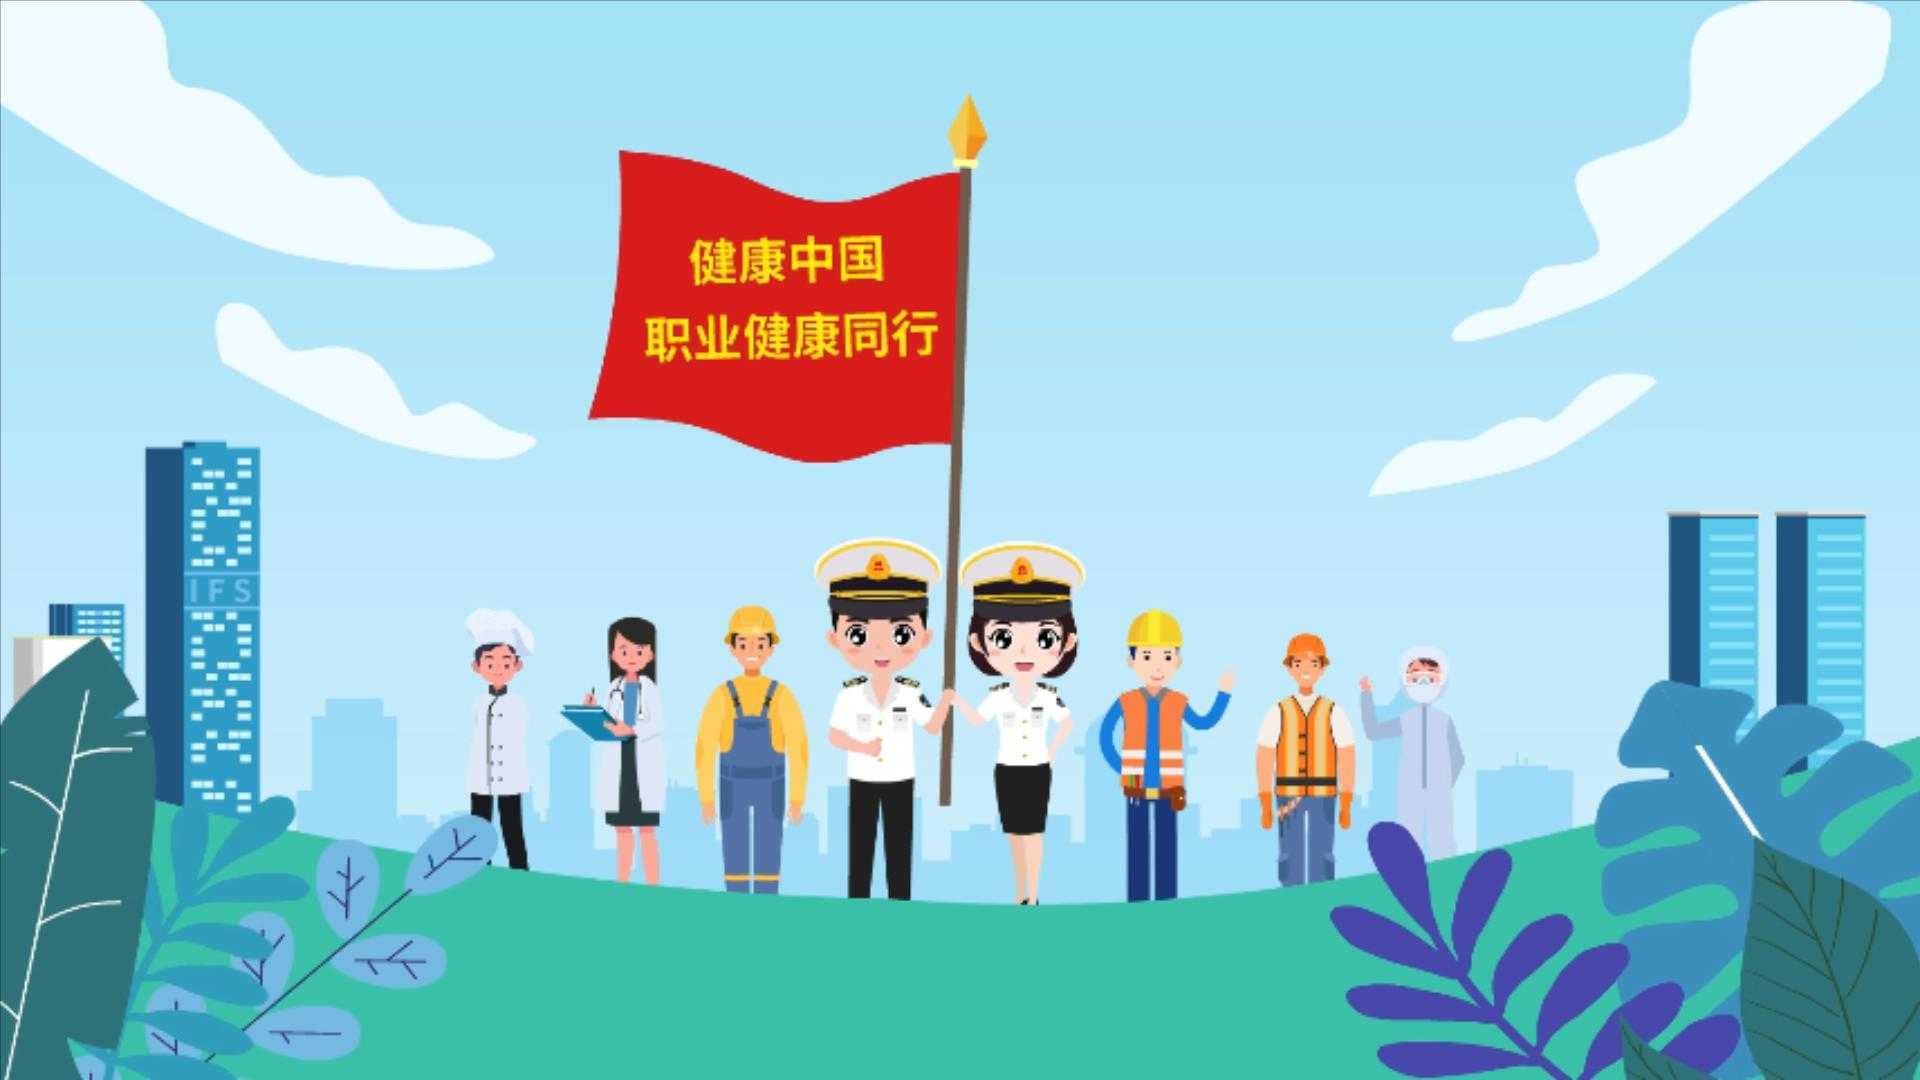 长沙市卫生监督执法局 《健康中国 职业健康同行 》MG动画